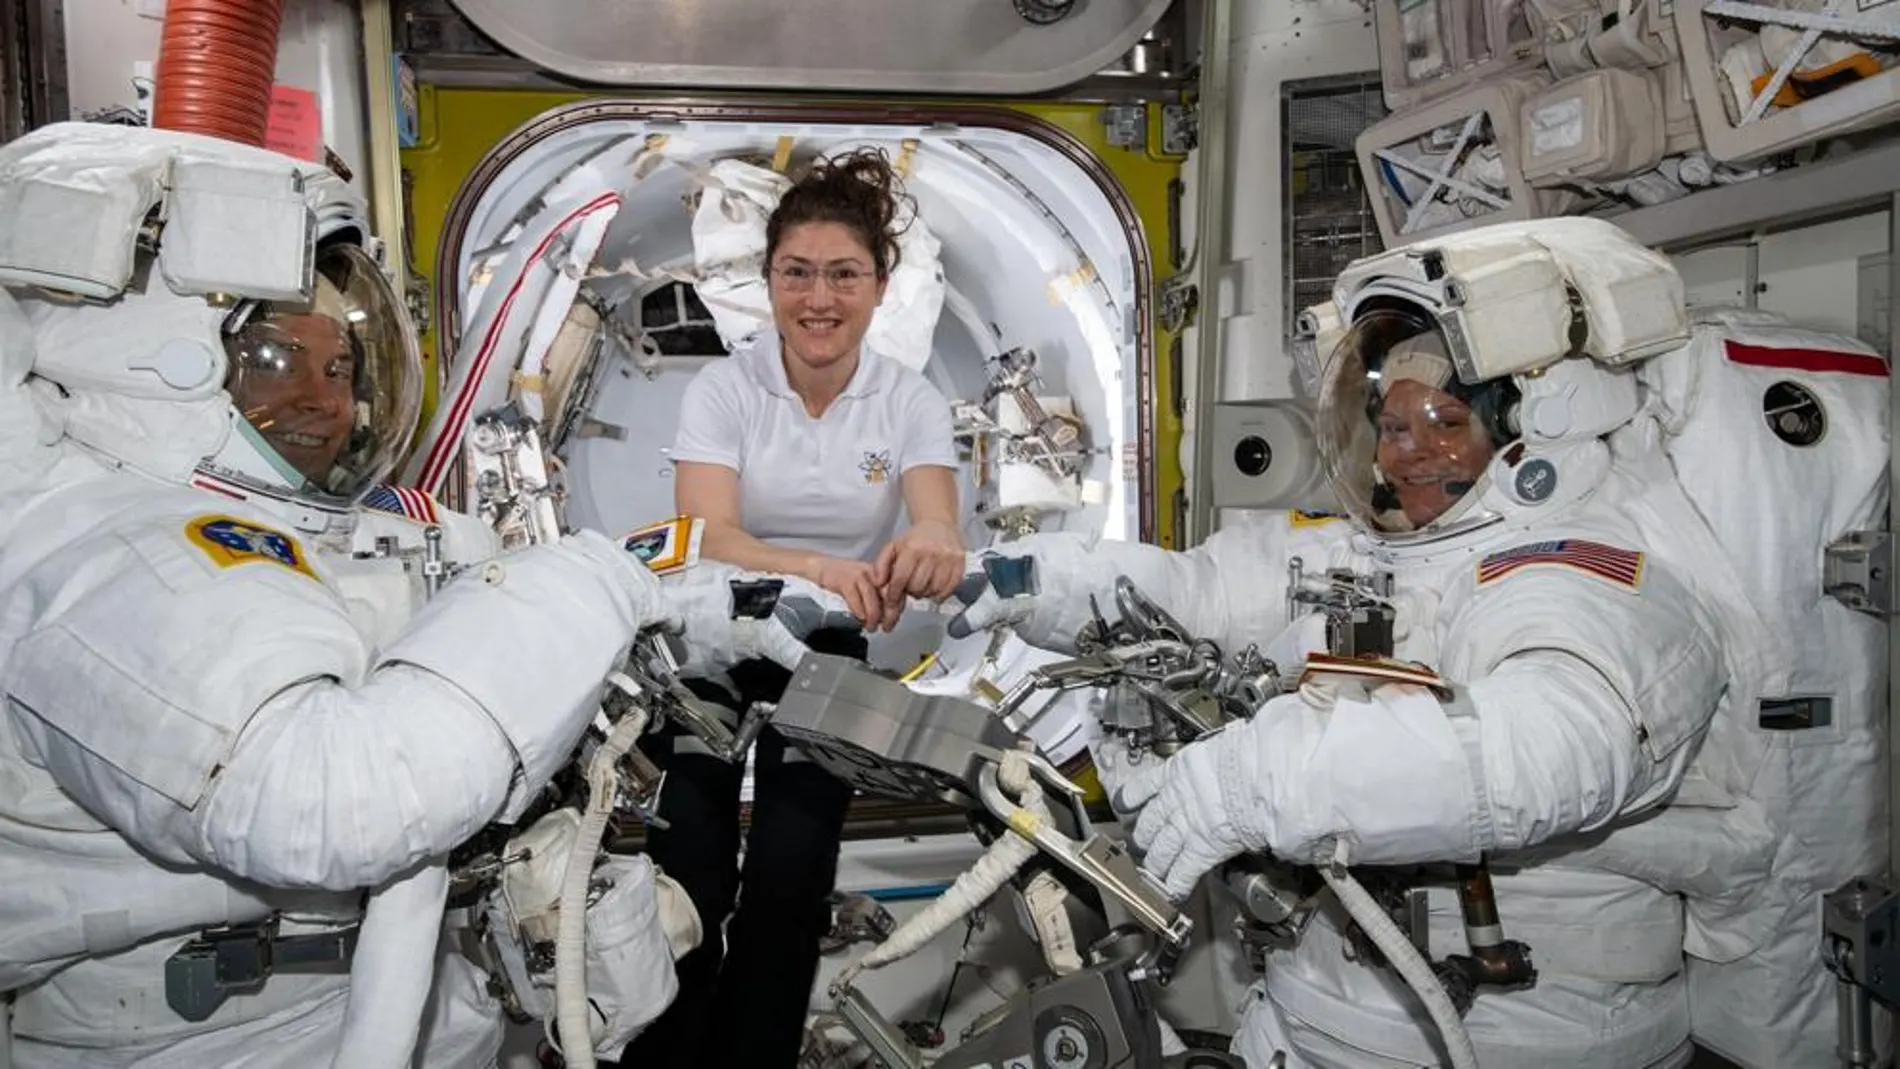 Los astronautas de la NASA Nick Hague (izquierda) y Anne McClain (derecha), preparándose para el paseo espacial del pasado viernes 22 de marzo, asistidos por Christina Koch (centro) / NASA